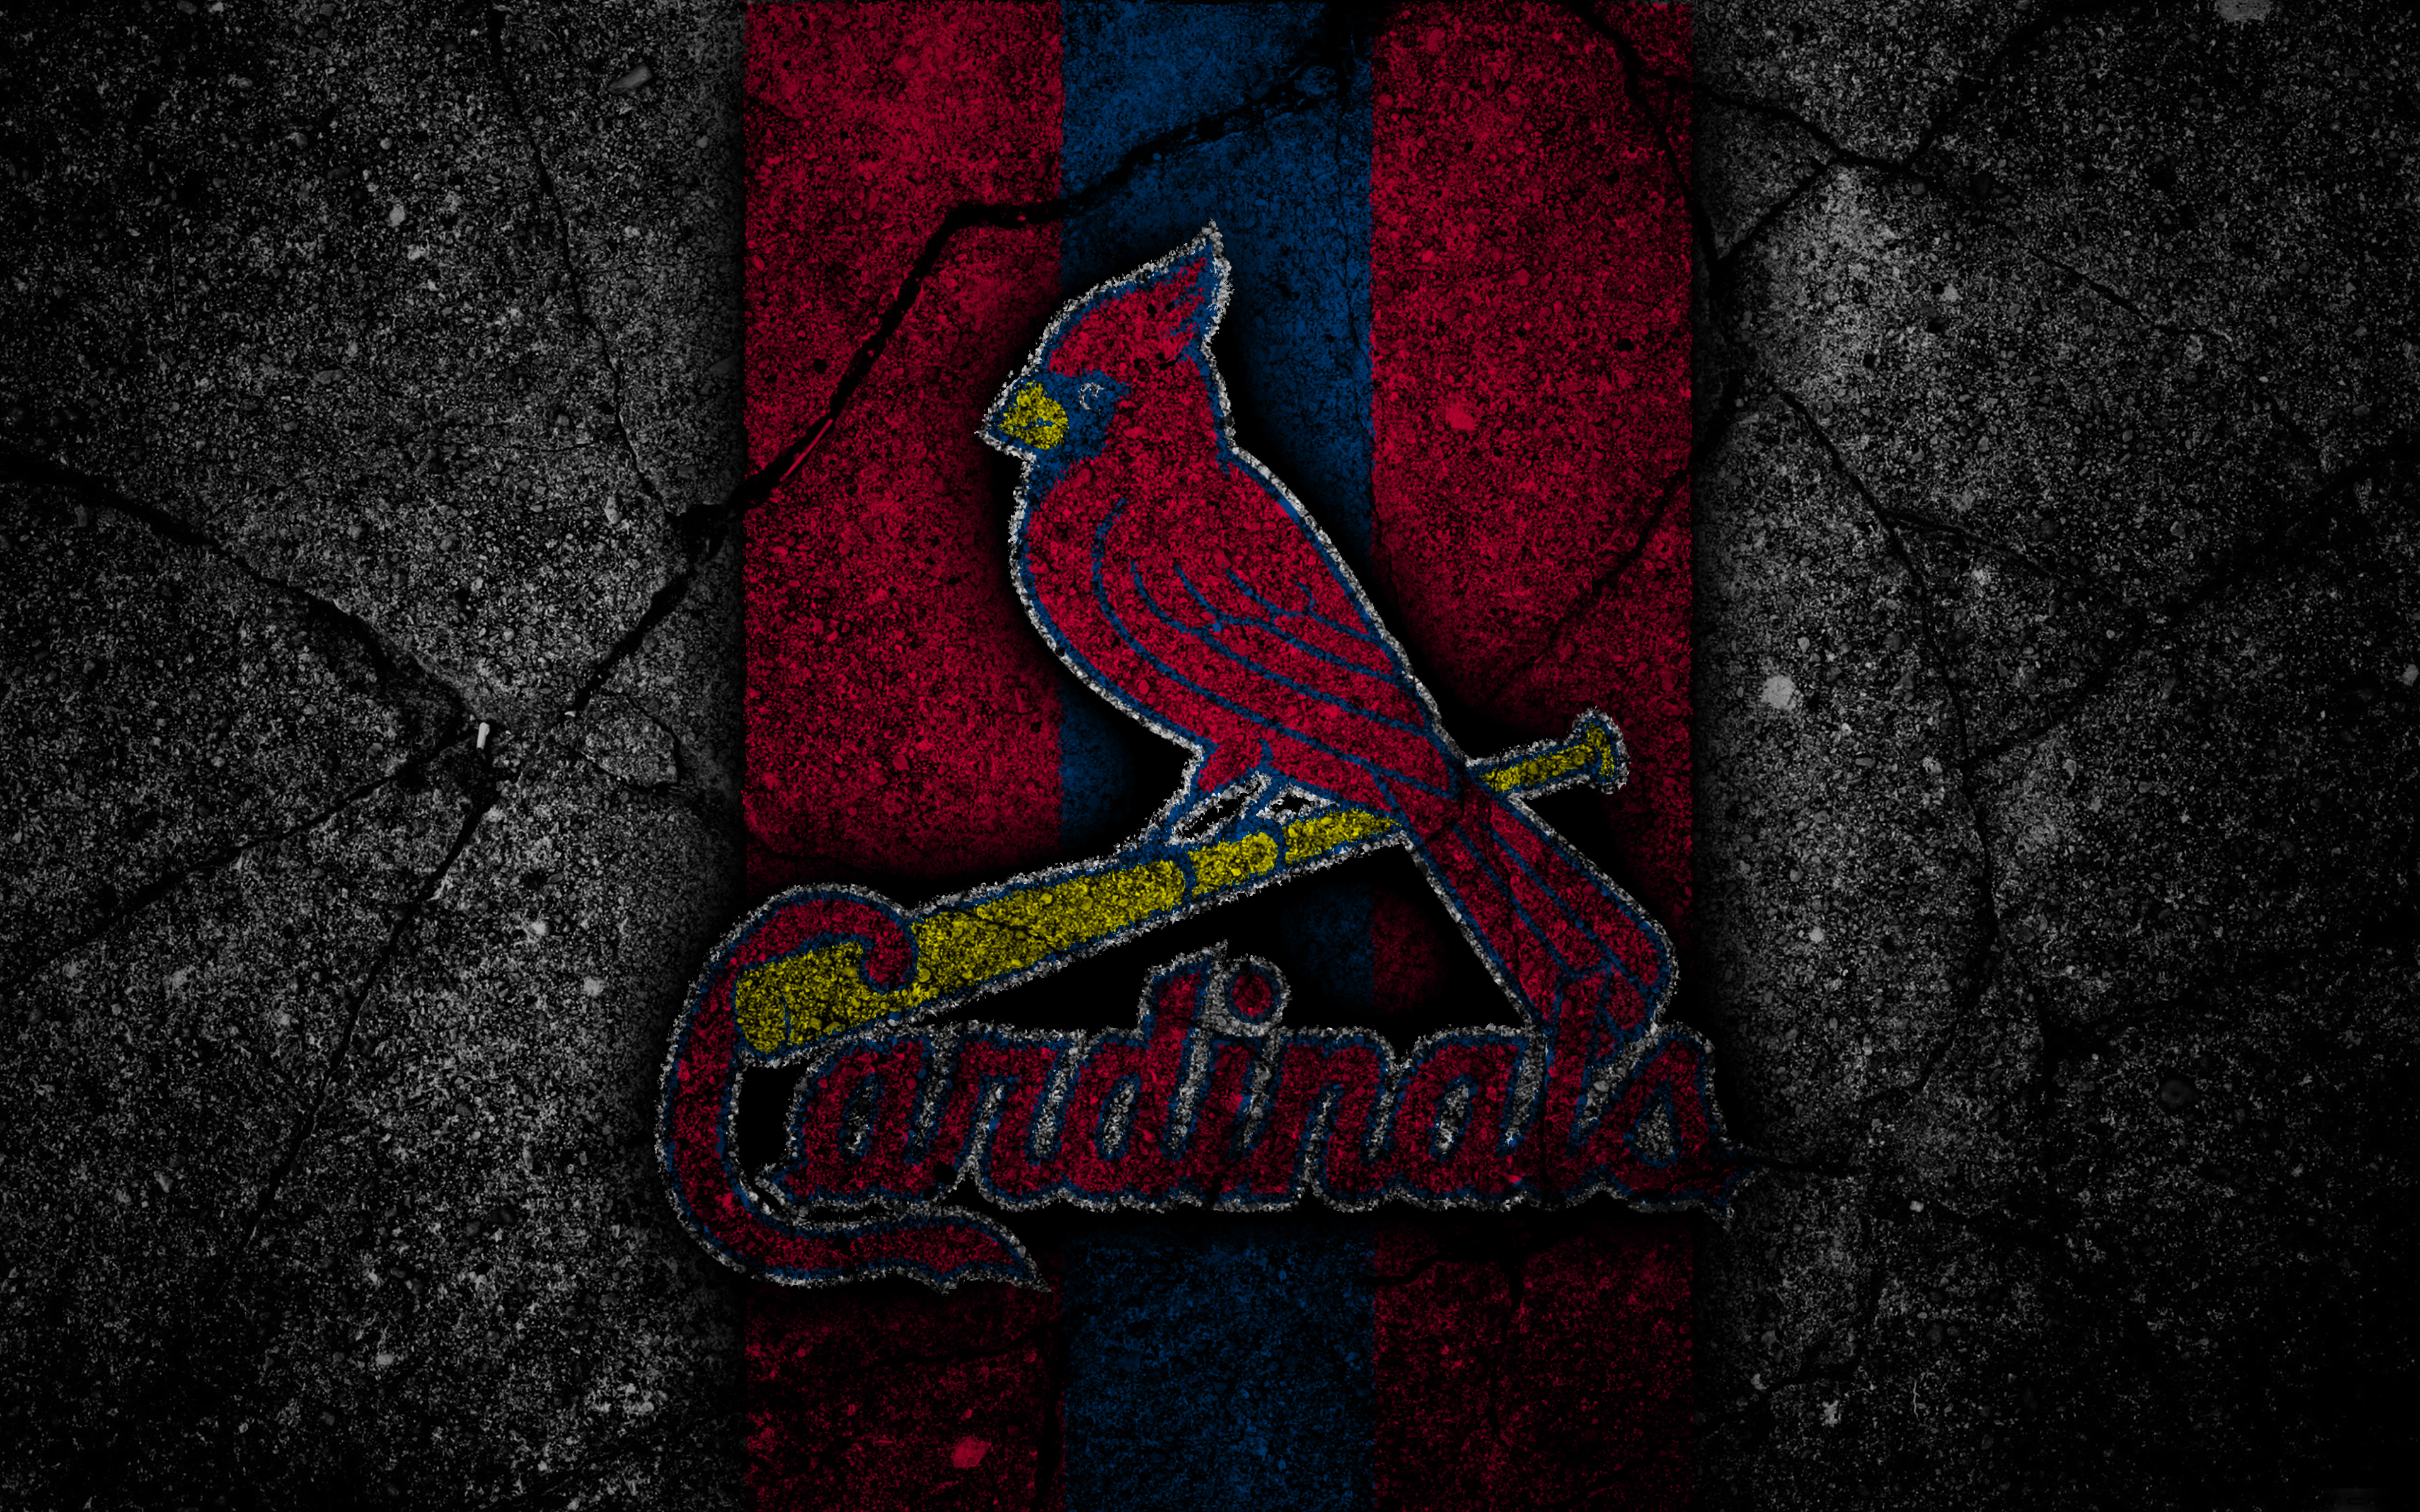 st louis cardinals, sports, baseball, logo, mlb